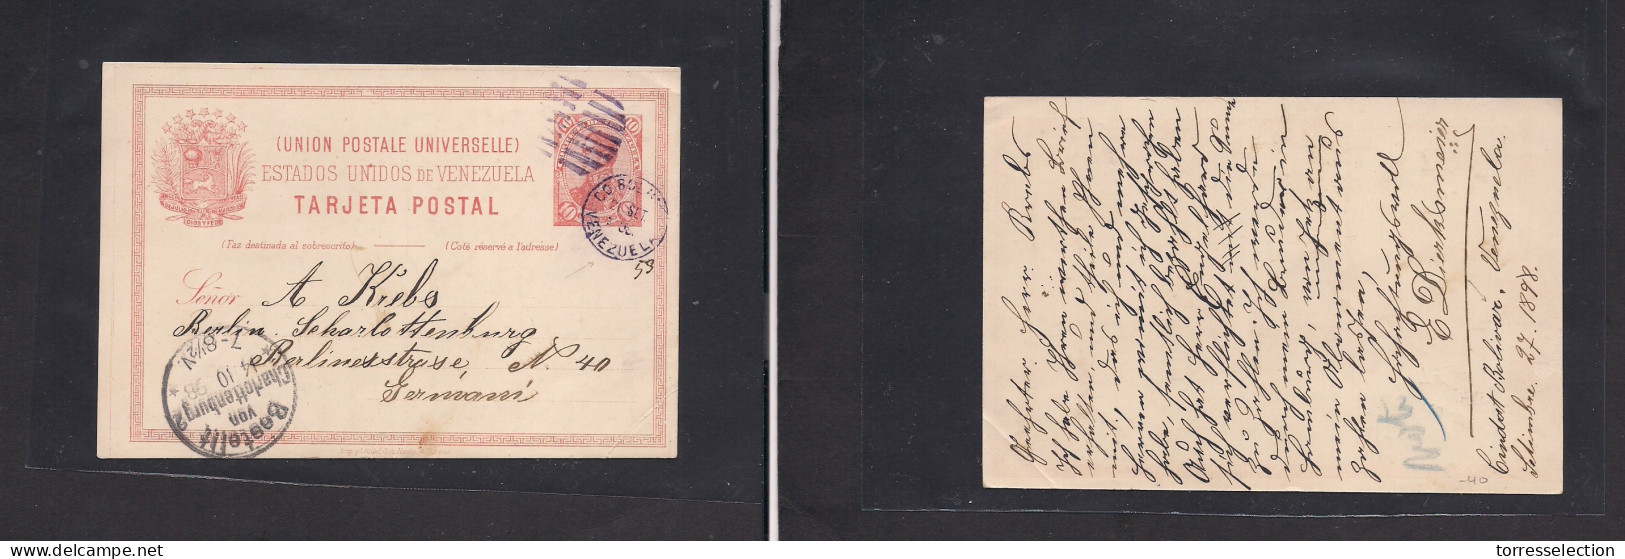 VENEZUELA. 1898 (27 Sept) Ciudad Bolivar - Germany, Berlin (14 Oct) 10c Red Stat Card. - Venezuela